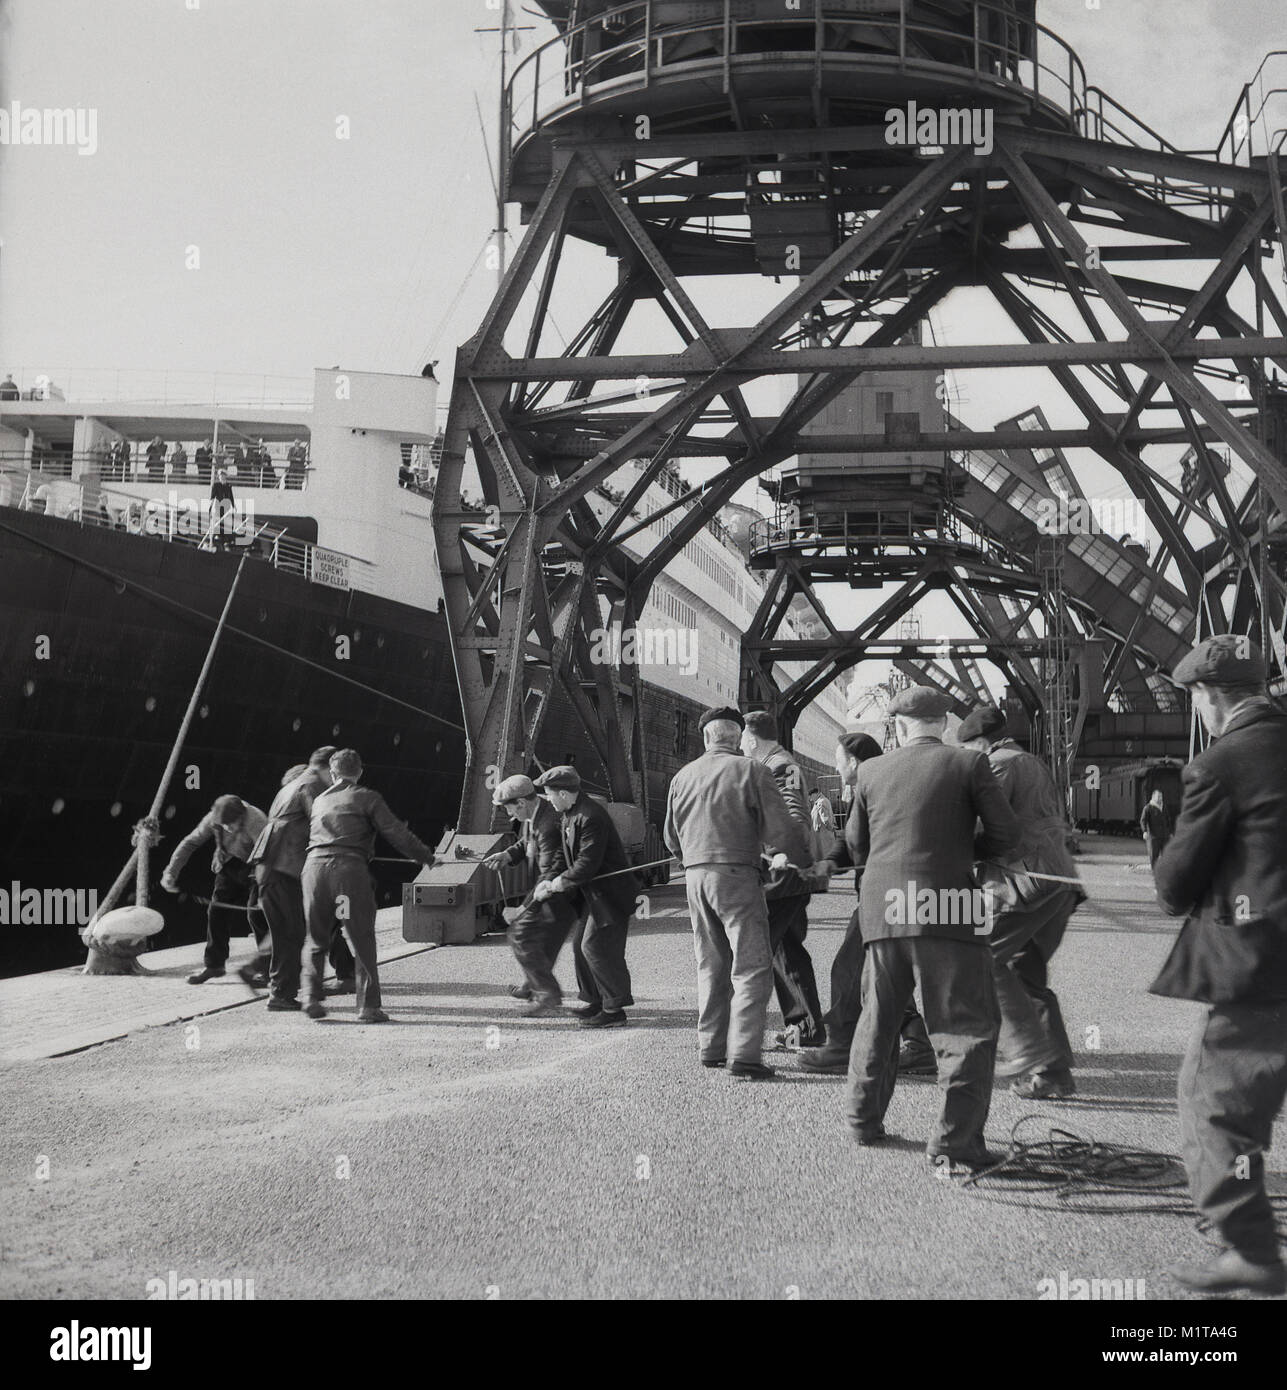 1950, historische, männliche Dockers ziehen ein Seil der RMS Queen Elizabeth Ocean Liner in an den Southampton Docks, England, UK zu binden. Nachdem die britische Königin Mutter genannt, war es das größte Passagierschiff, das jemals gebaut wurde damals (1938) und blieb für 56 Jahre danach. Sie wurde als Truppentransporter im Zweiten Weltkrieg benutzt und wurde erst ein ozeanriese wie in 1946 vorgesehen. Stockfoto